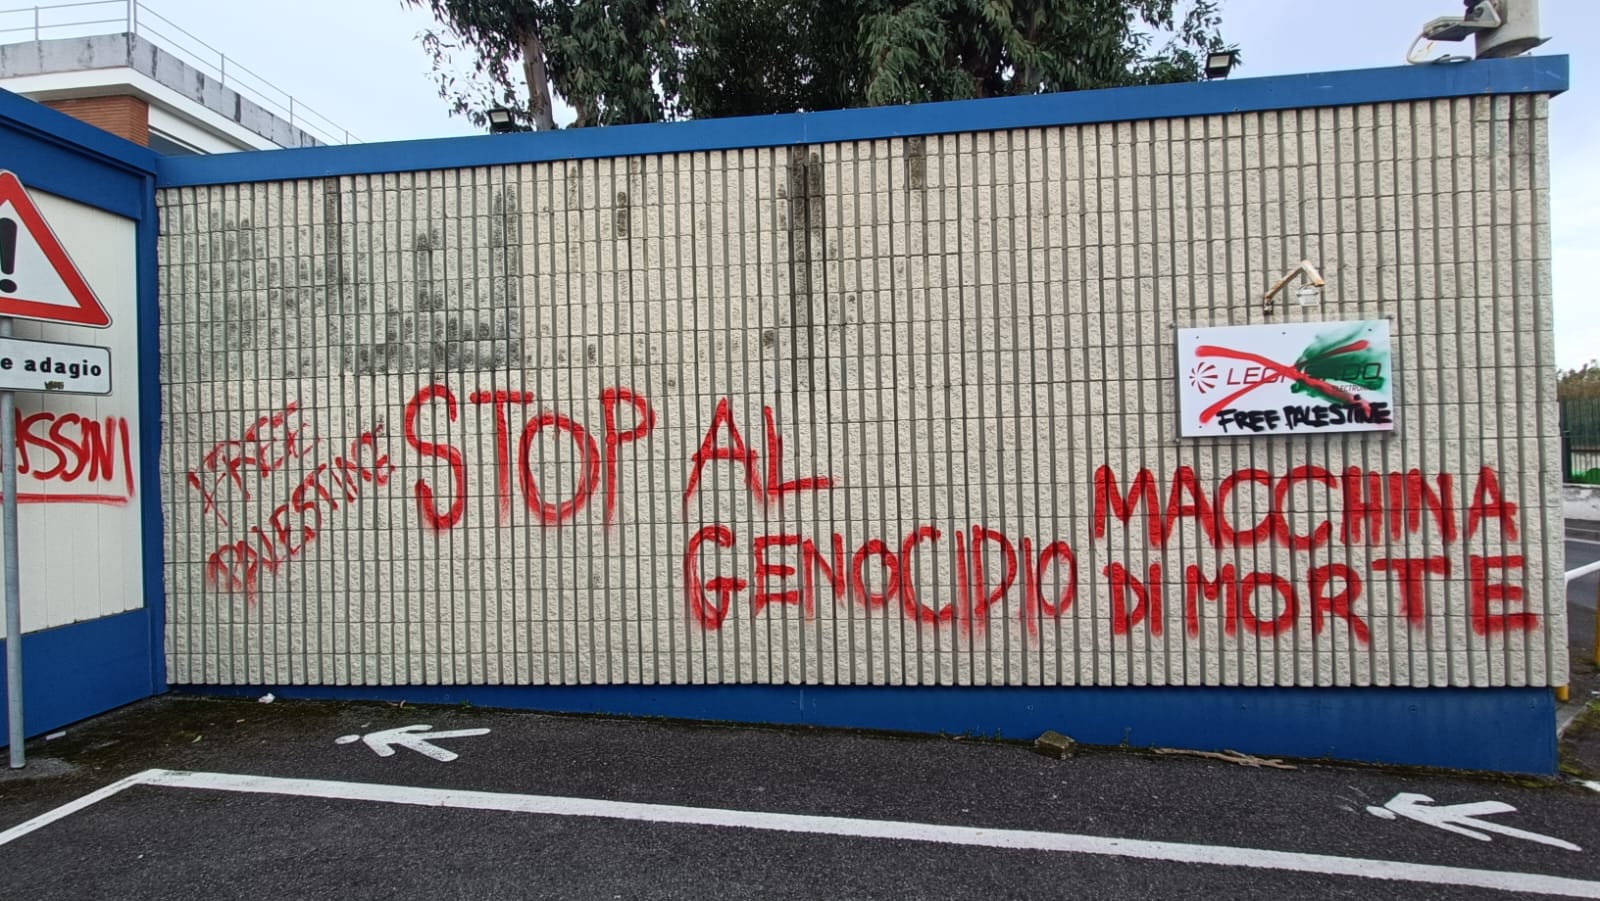 Palestina libera, manifestazione all’esterno dell’industria Leonardo a Bacoli – LE FOTO